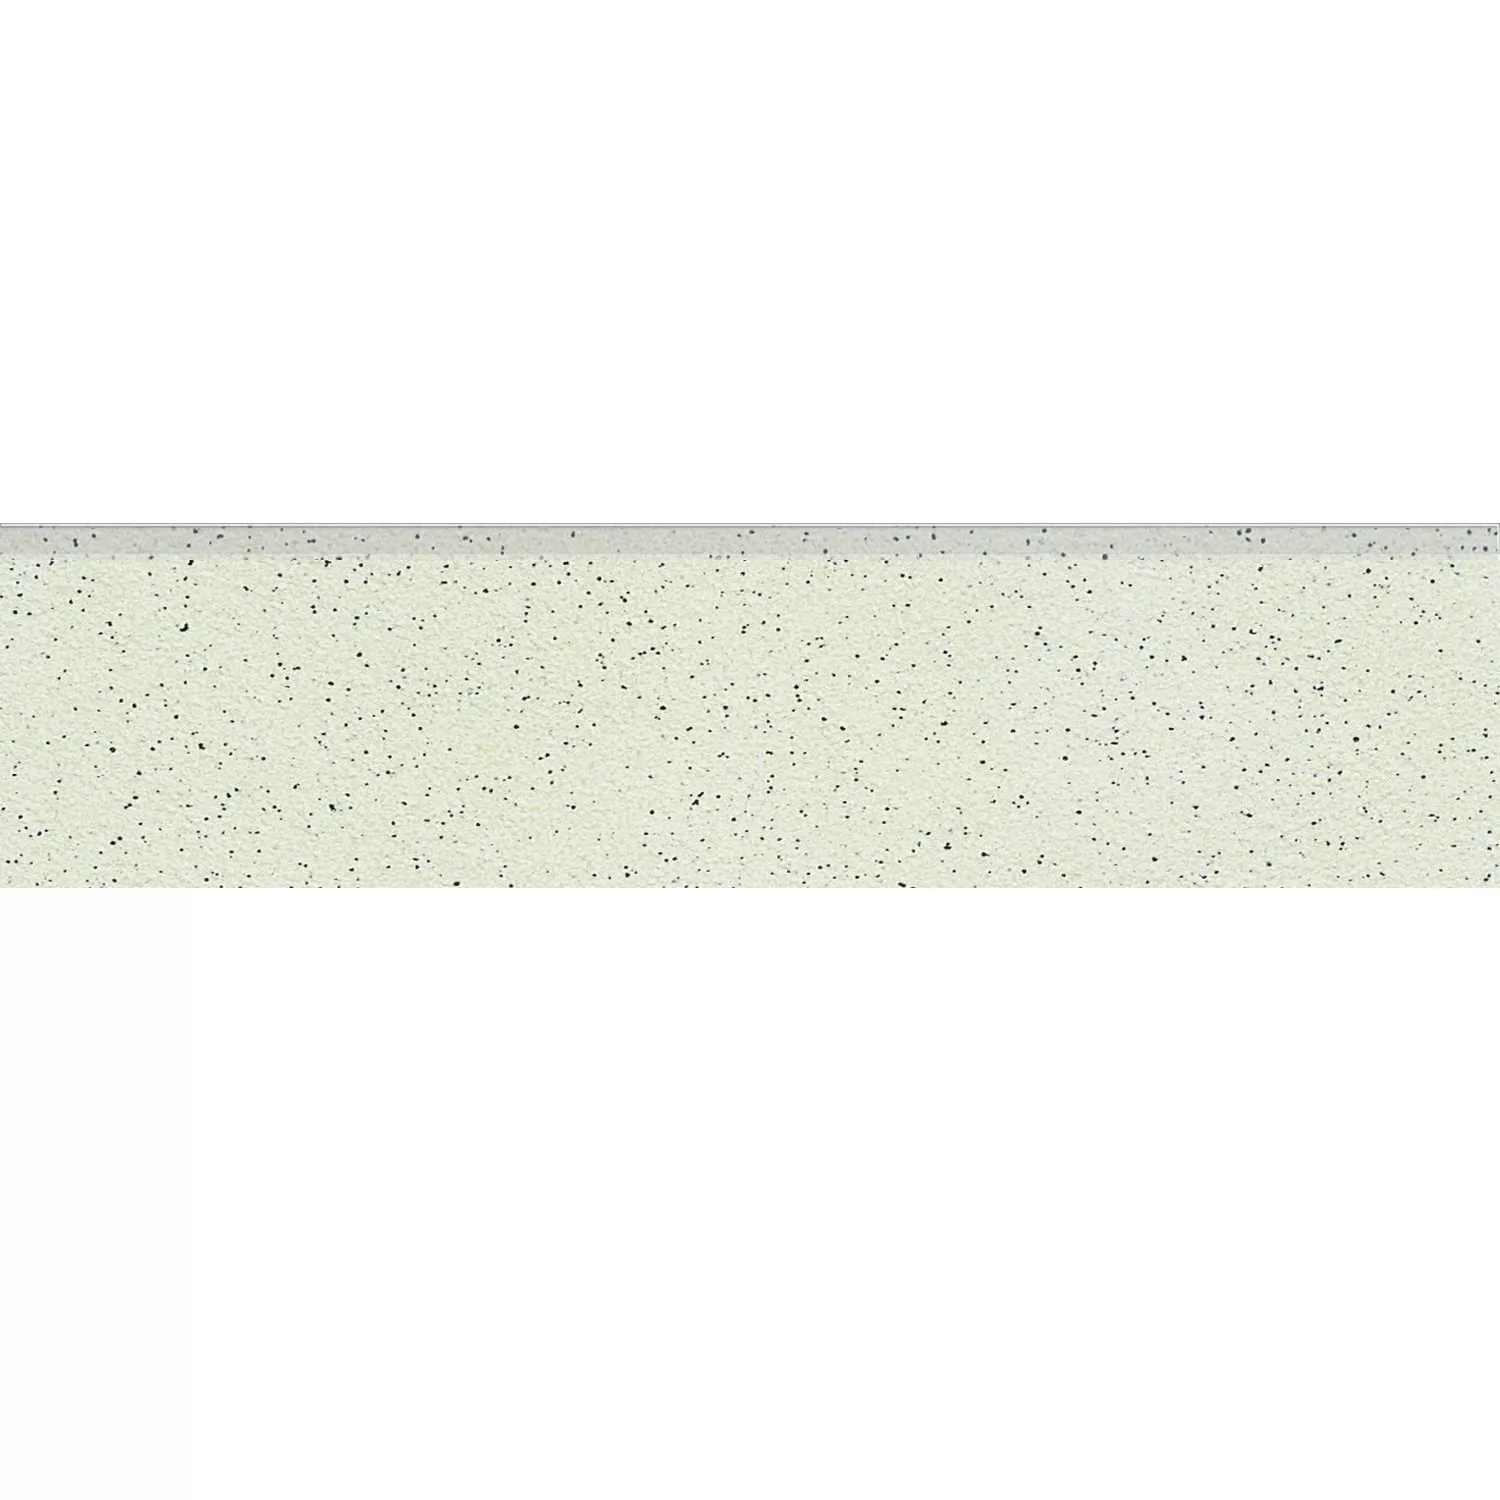 Σοβατεπί Ψιλό Σιτάρι Πλακάκι Kρέμα 30x7cm